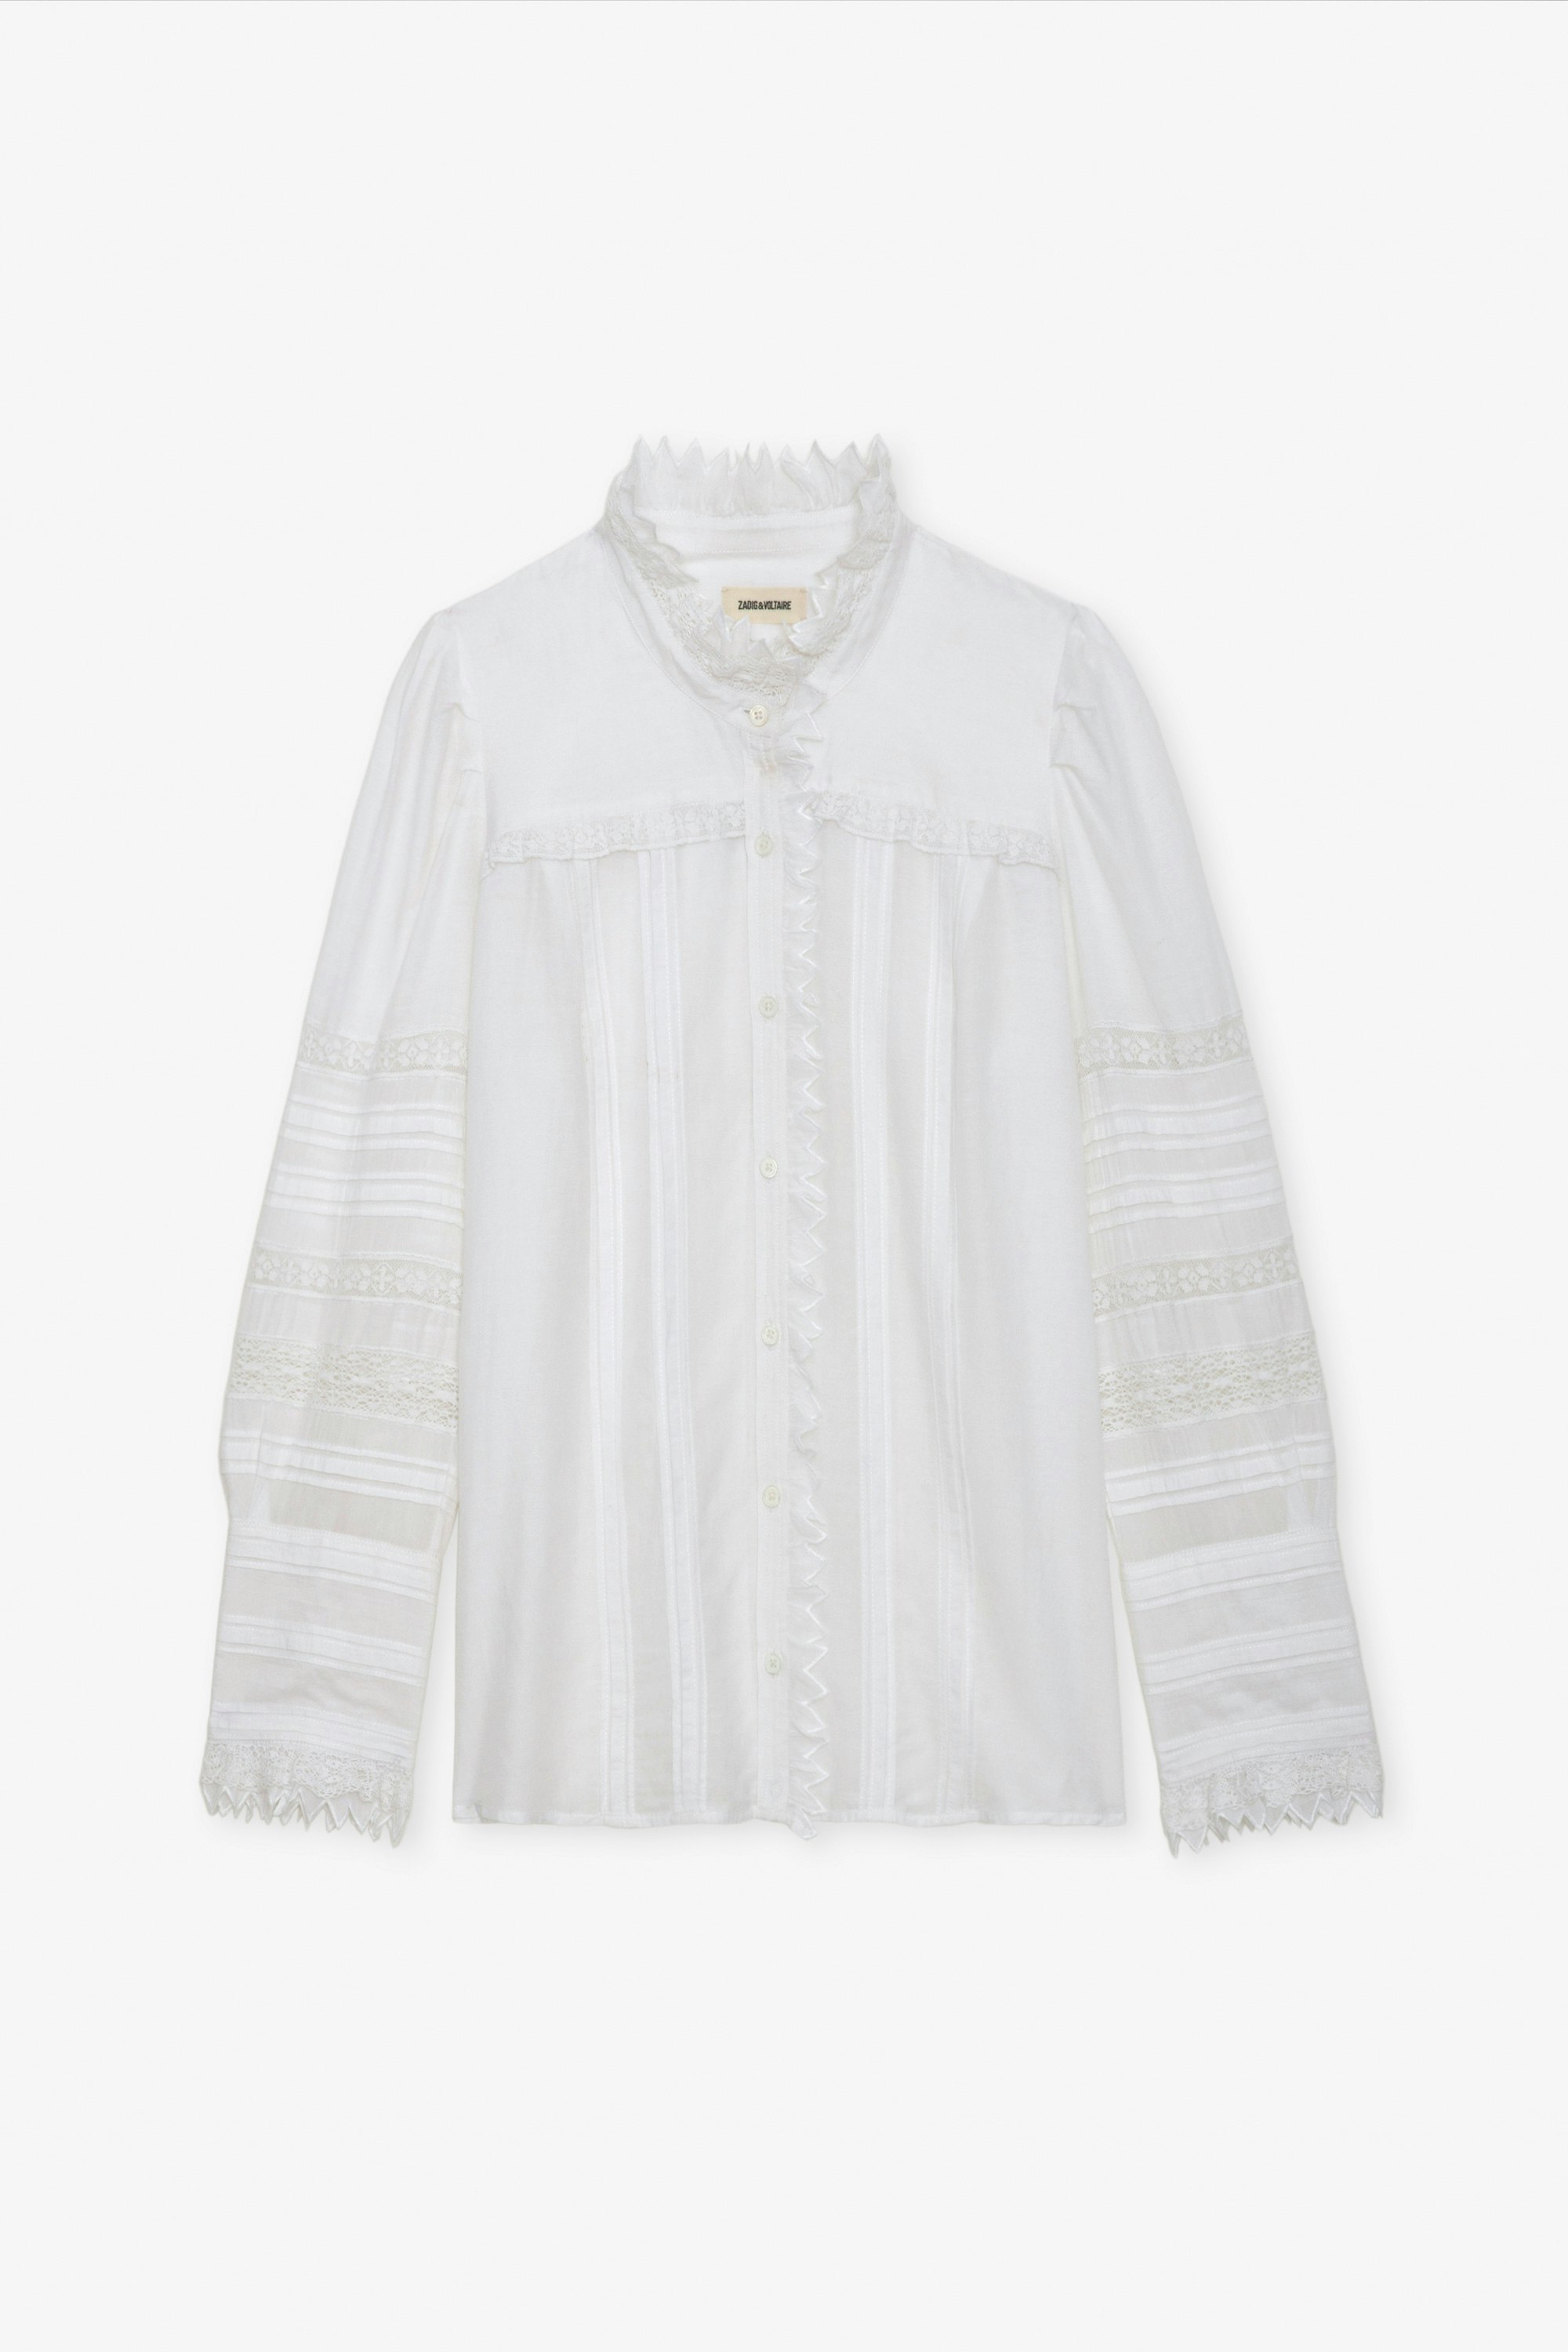 Bluse Trevy - Weiße Bluse aus Baumwolle mit langen, gepufften Ärmeln, Spitzenbändern und Raffungen.